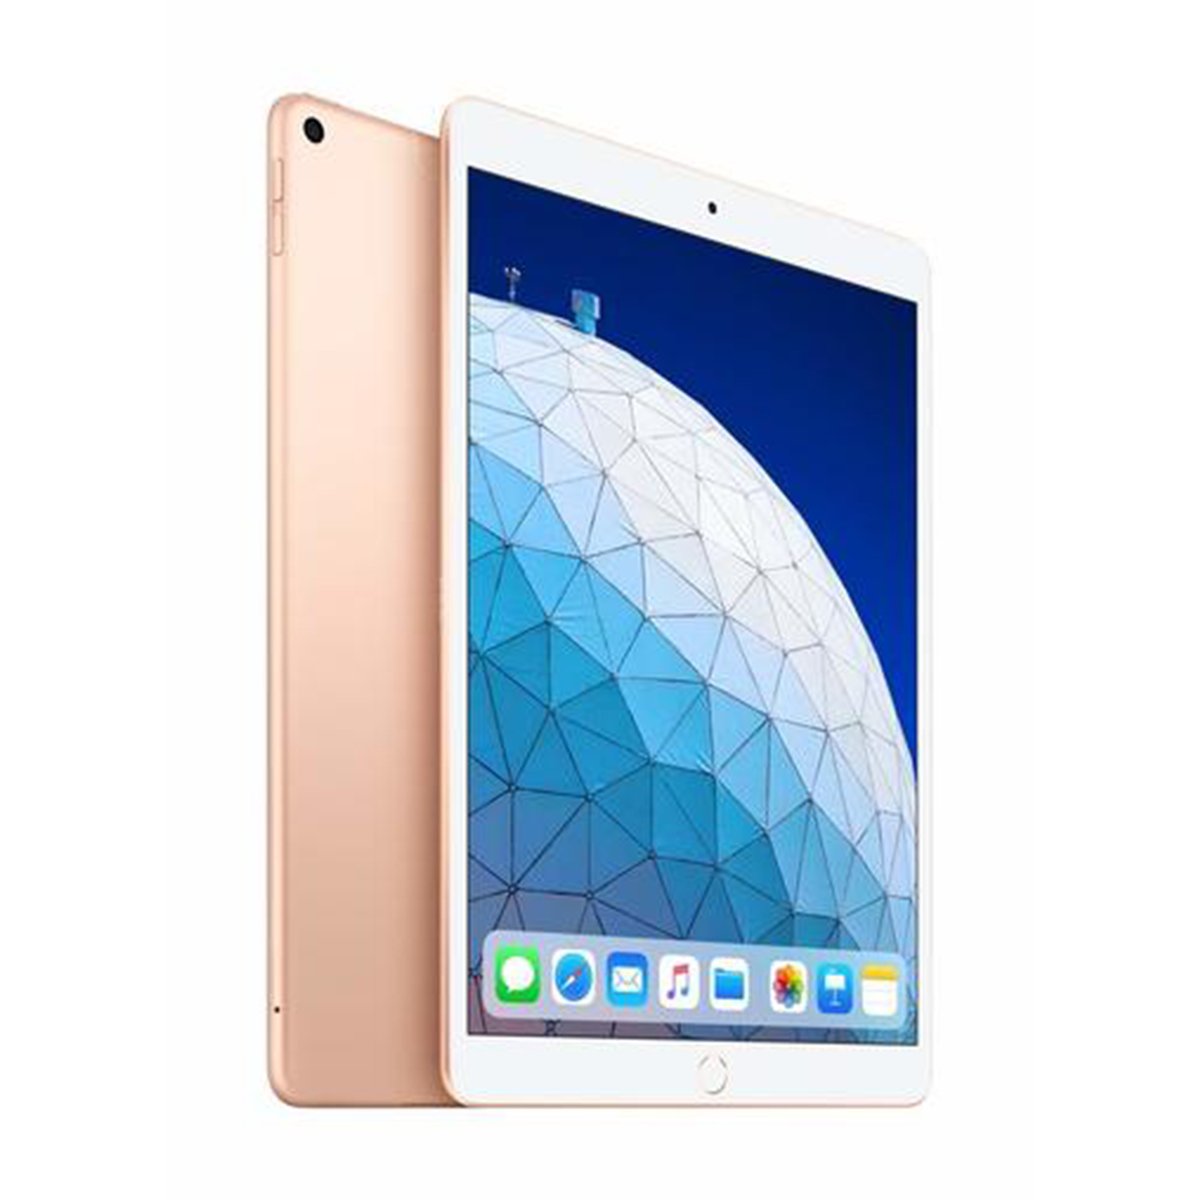 Apple iPad Air (2019) - iOS (Wi-Fi + Cellular, 64GB) 10.5inch Gold